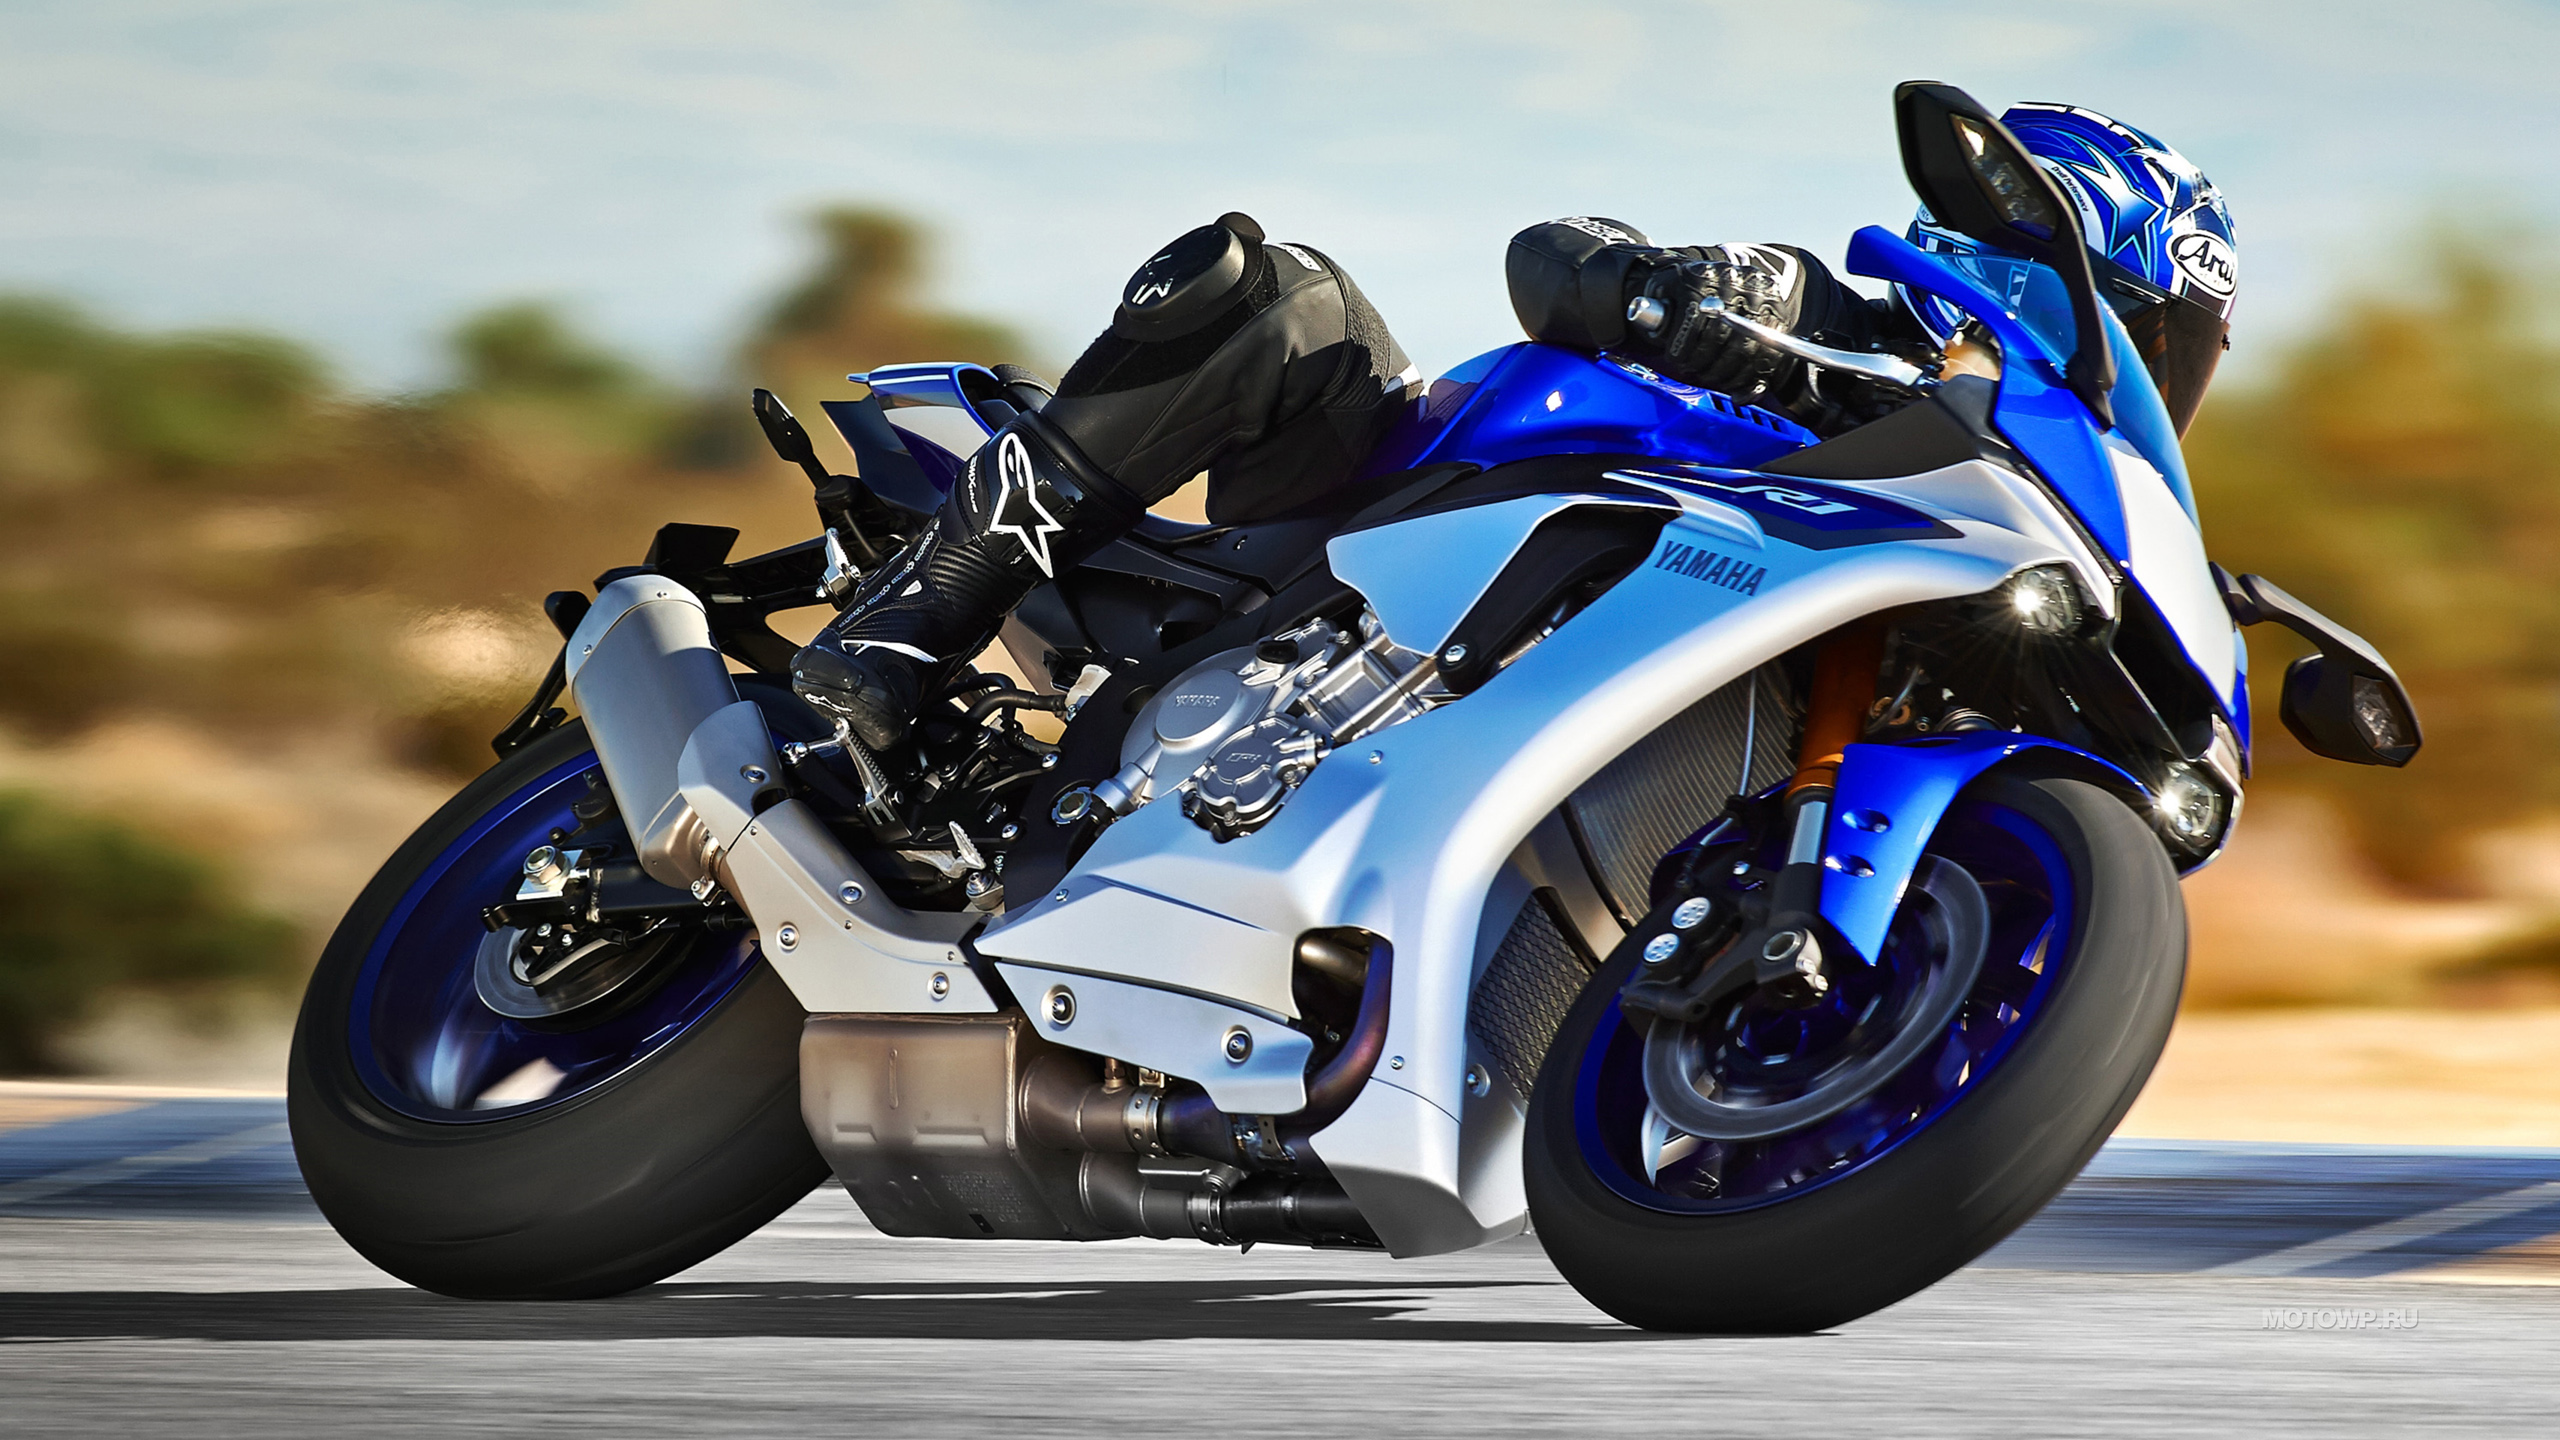 Ямаха yzf r1 - мотоцикл, который стал мечтой для многих гонщиков